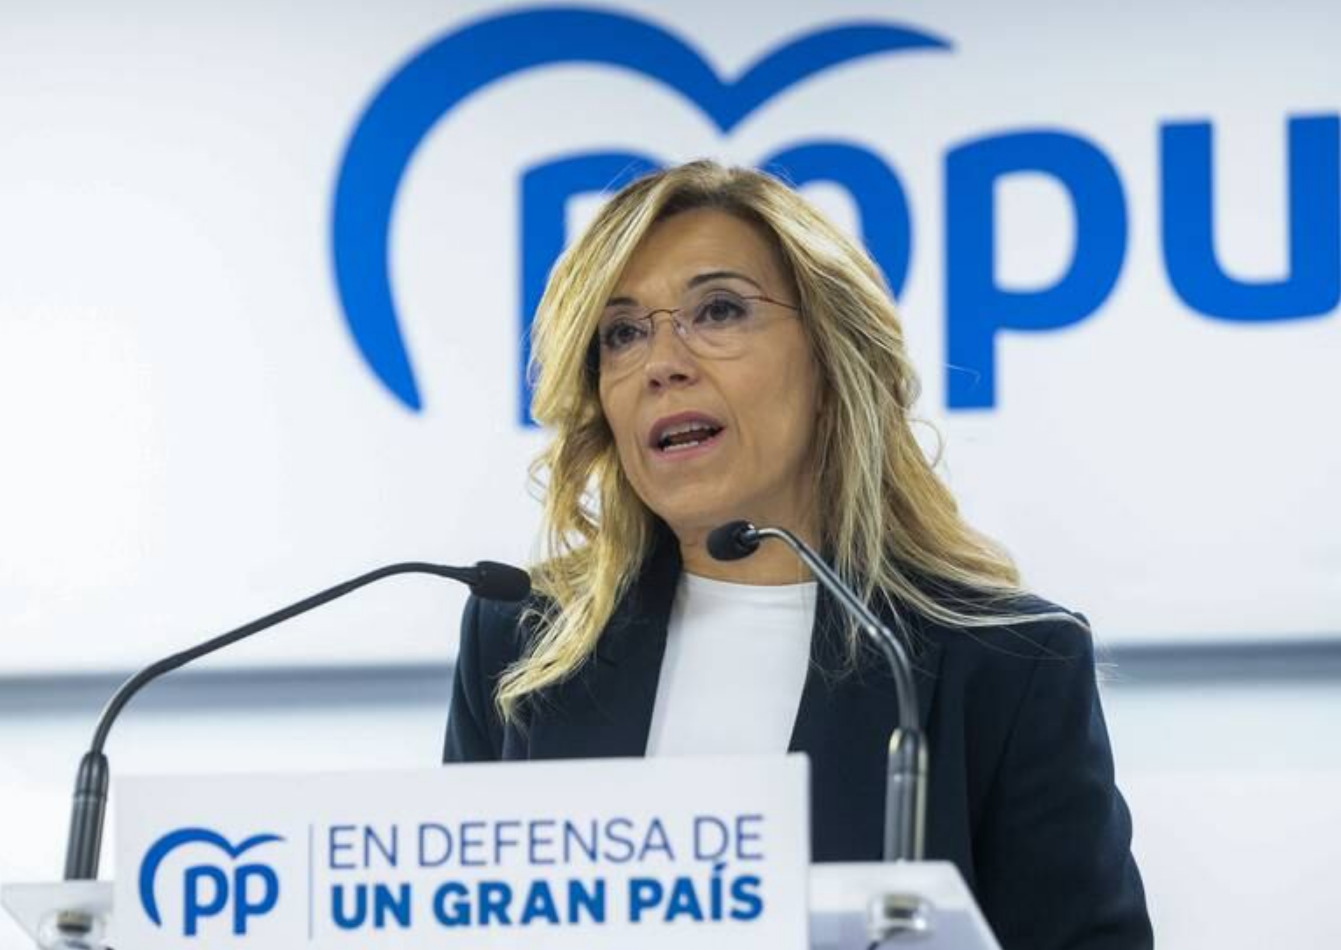 La vicesecretaria de Igualdad, Conciliación y Política Social del PP, Ana Alós. Foto: EFE.